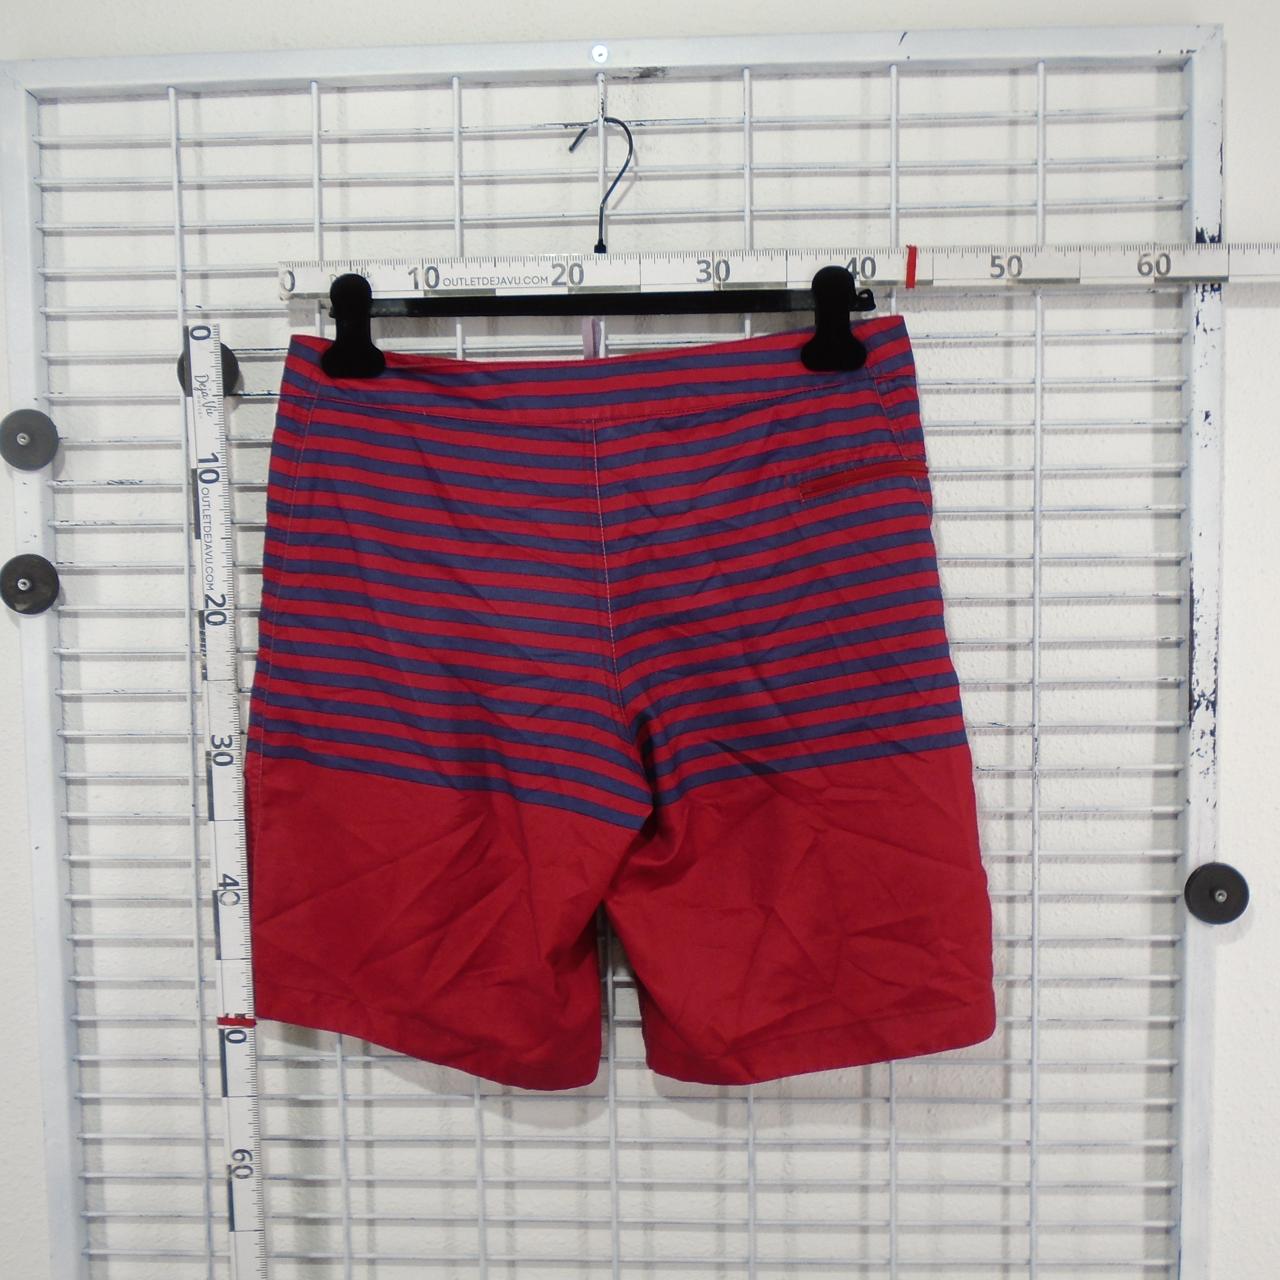 Pantalones cortos de hombre GAP.  Multicolor.  M.Usado.  Bien